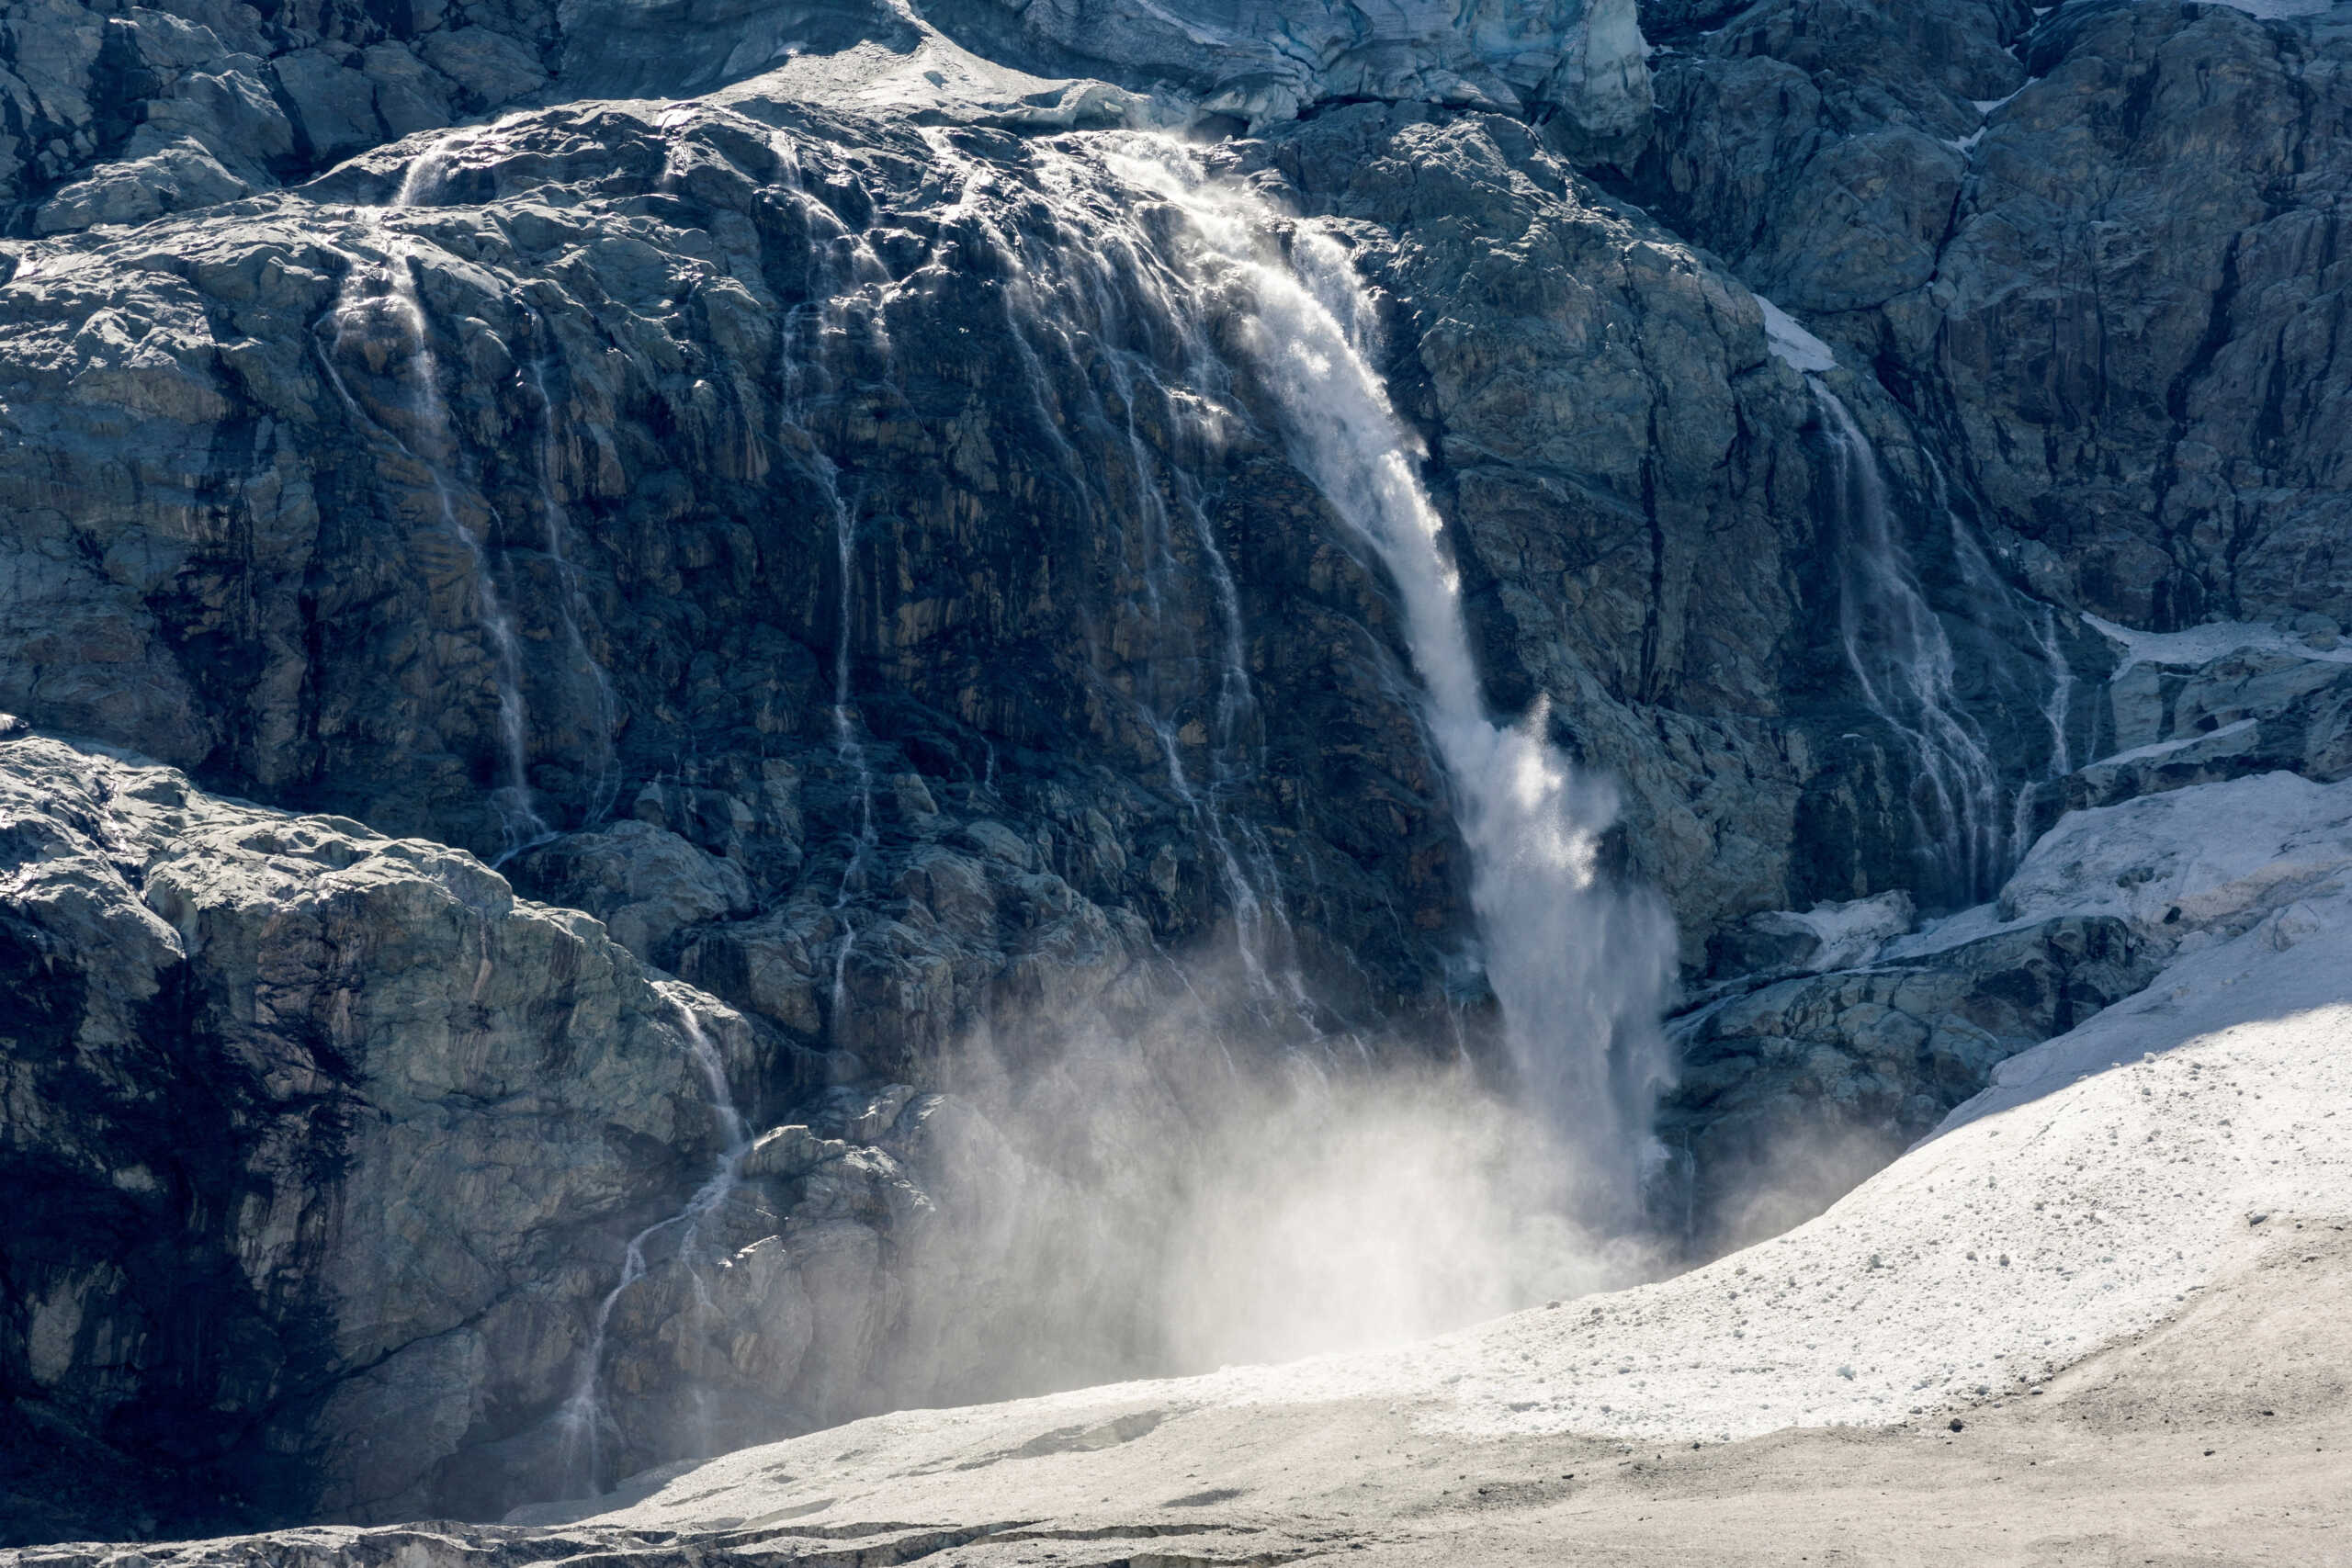 Λιώνουν ραγδαία οι παγετώνες στην Ελβετία – Θα έχουν σχεδόν εξαφανιστεί «μέχρι το τέλος του αιώνα» εκτιμούν ειδικοί